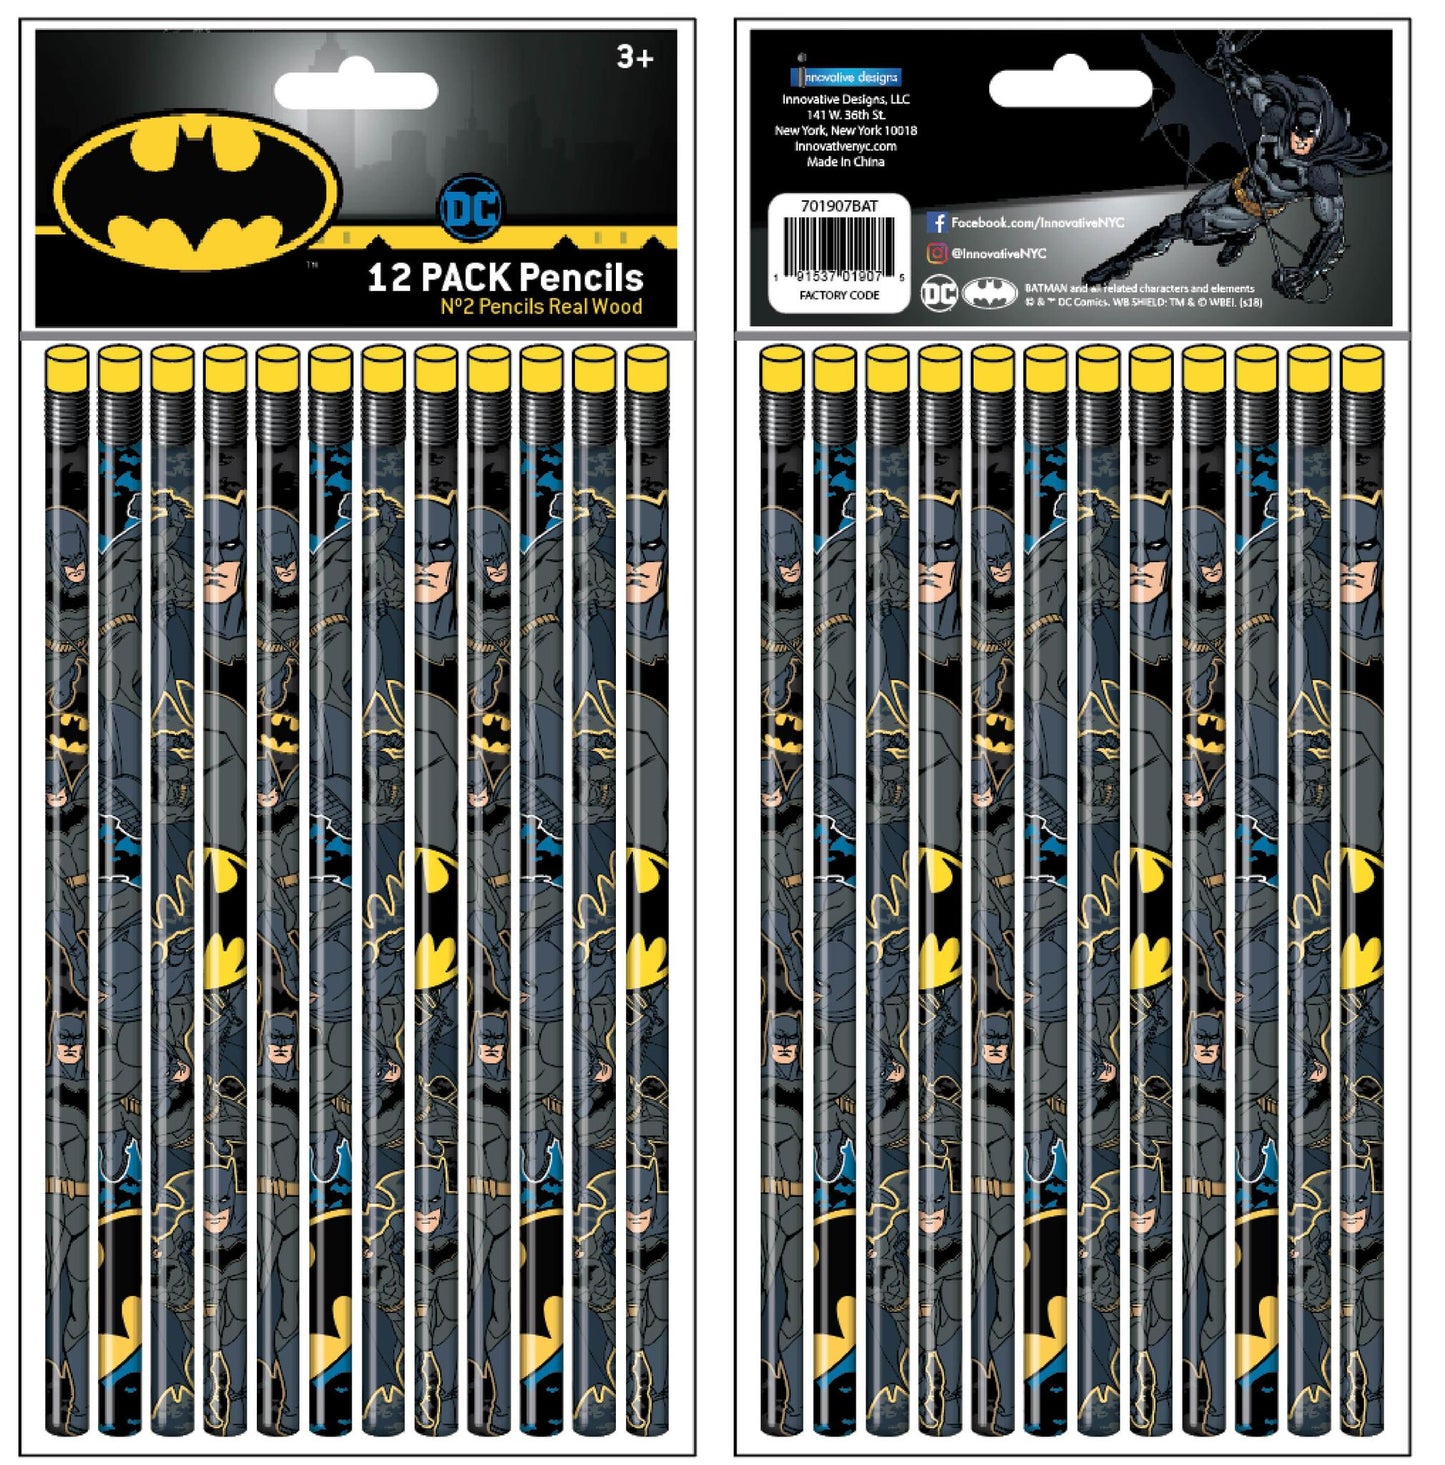 Innovative Designs Batman 12 Pack Pencils - No. 2 Lead, Real Wood Pencils